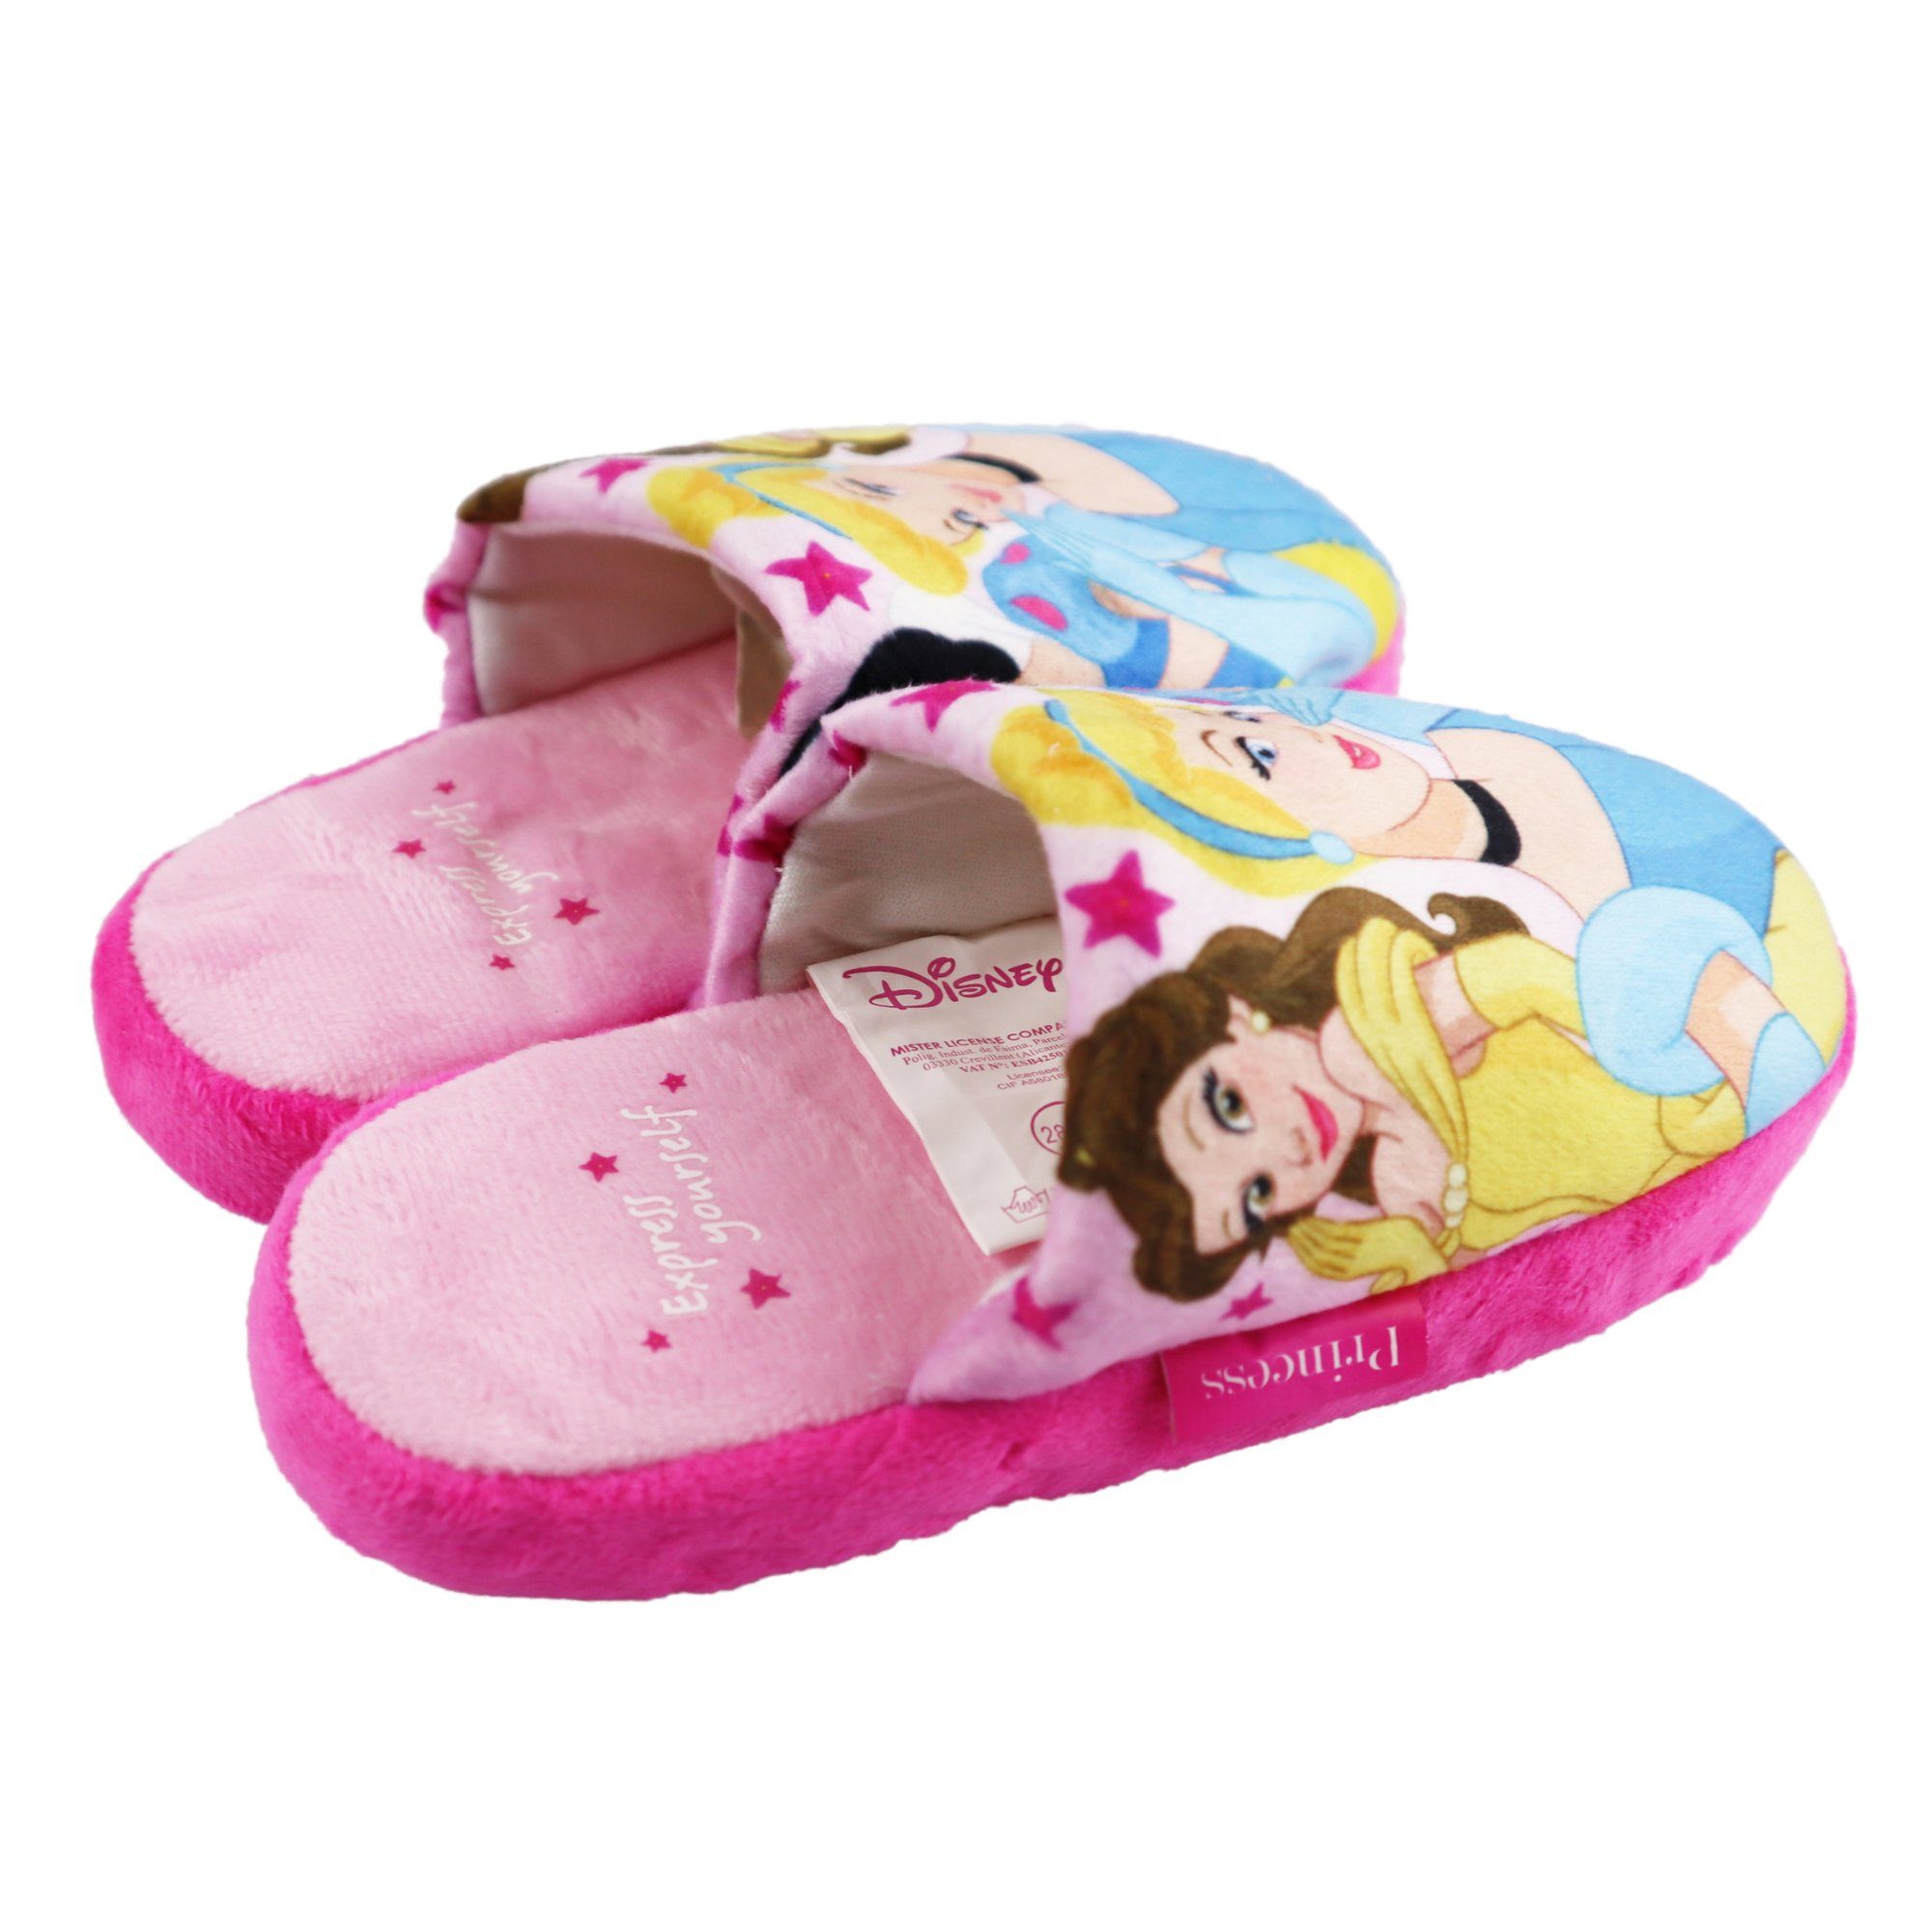 Pantoffel Slipper bis Disney Kinder Mädchen Hausschuhe 26 Disney Prinzessin Schlüpfschuhe 33 Gr.